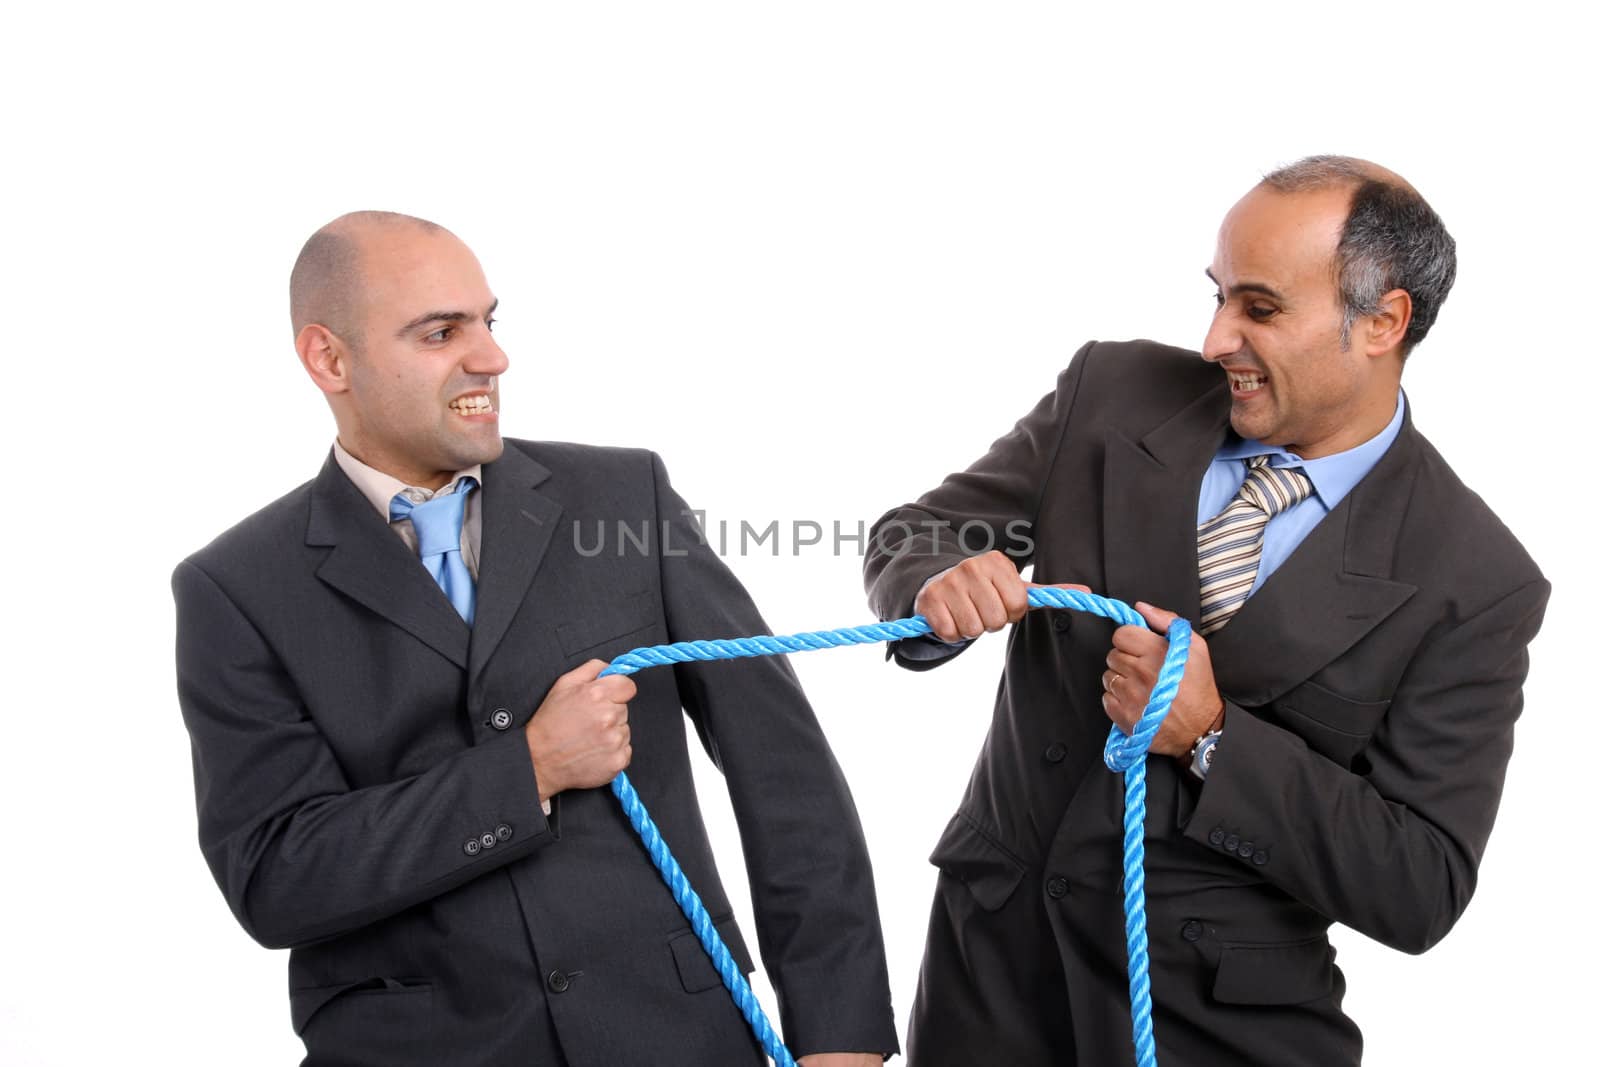 business battle rope by jpcasais